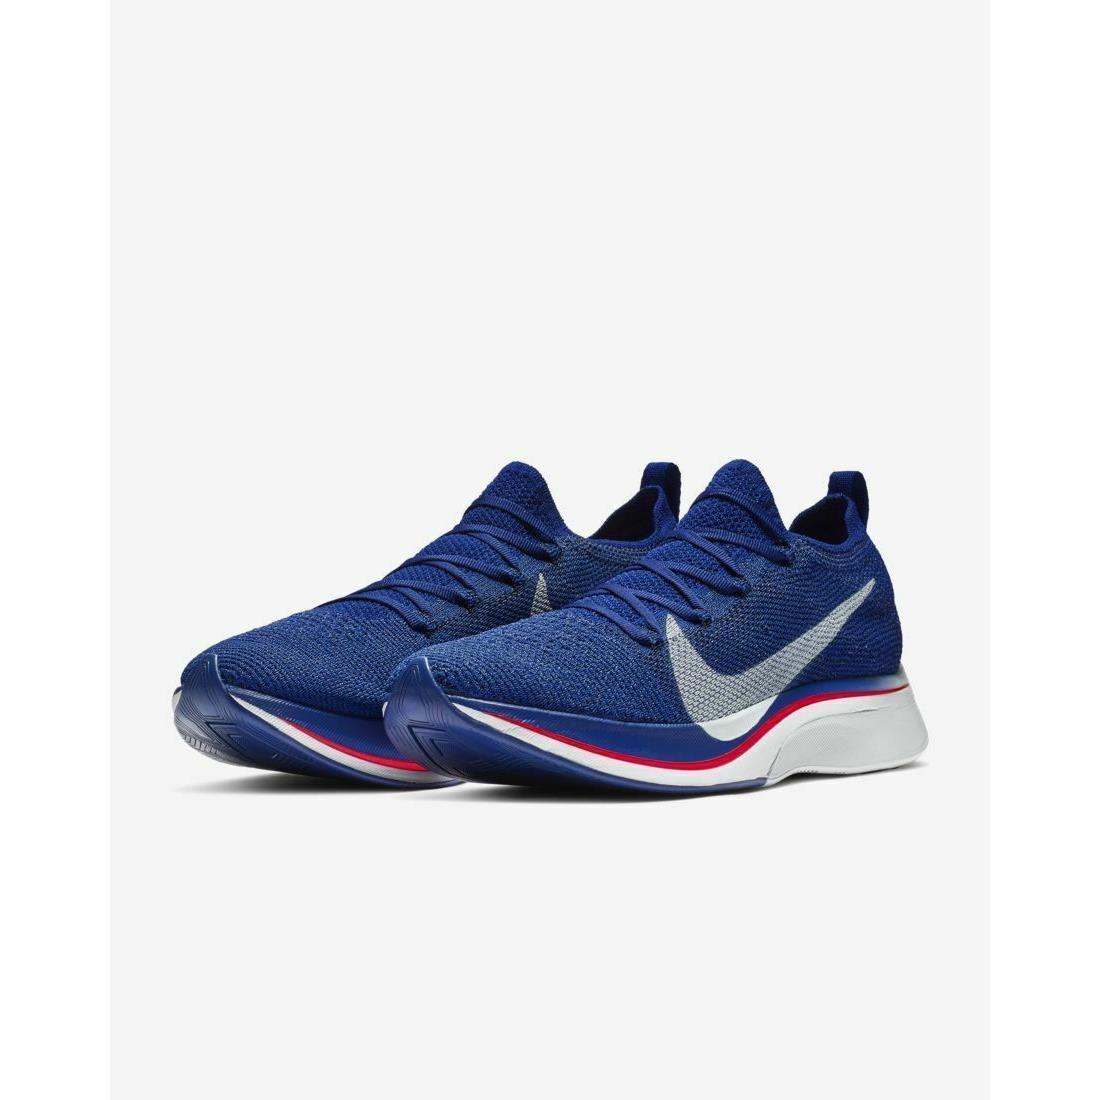 Nike Zoom Vaporfly 4% Flyknit Blue Unisex Shoes-size Men`s 5.5 / Women`s 7